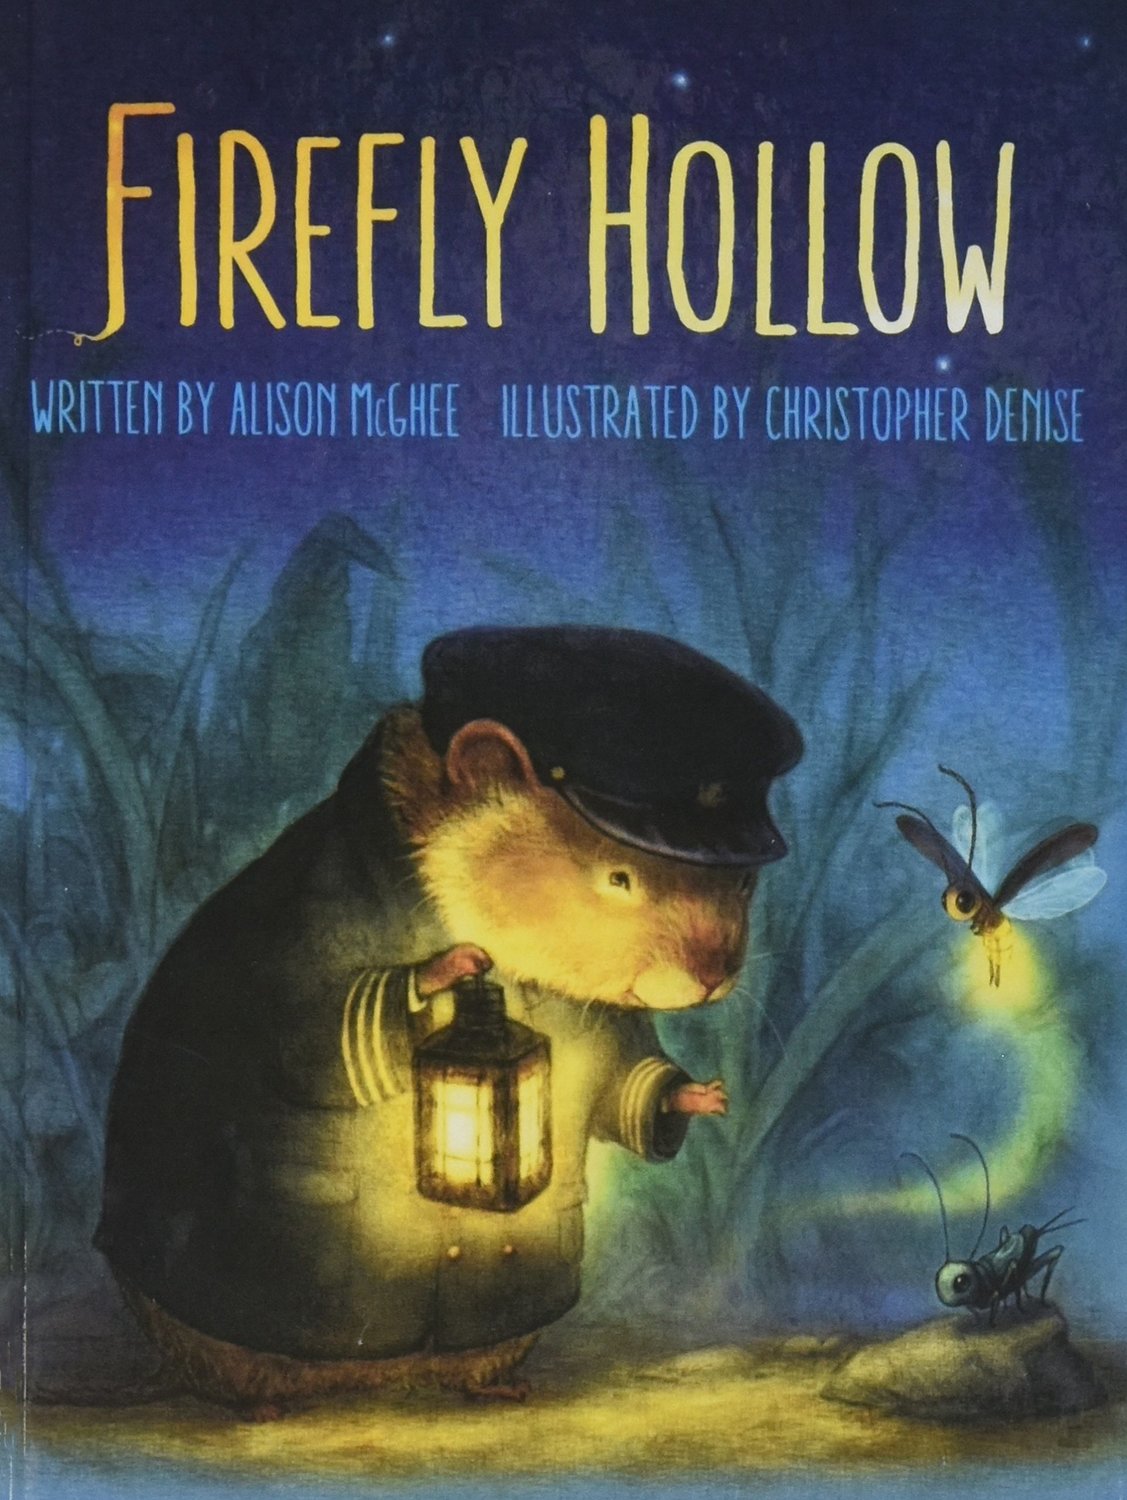 “Firefly Hollow’’ by Alison McGhee